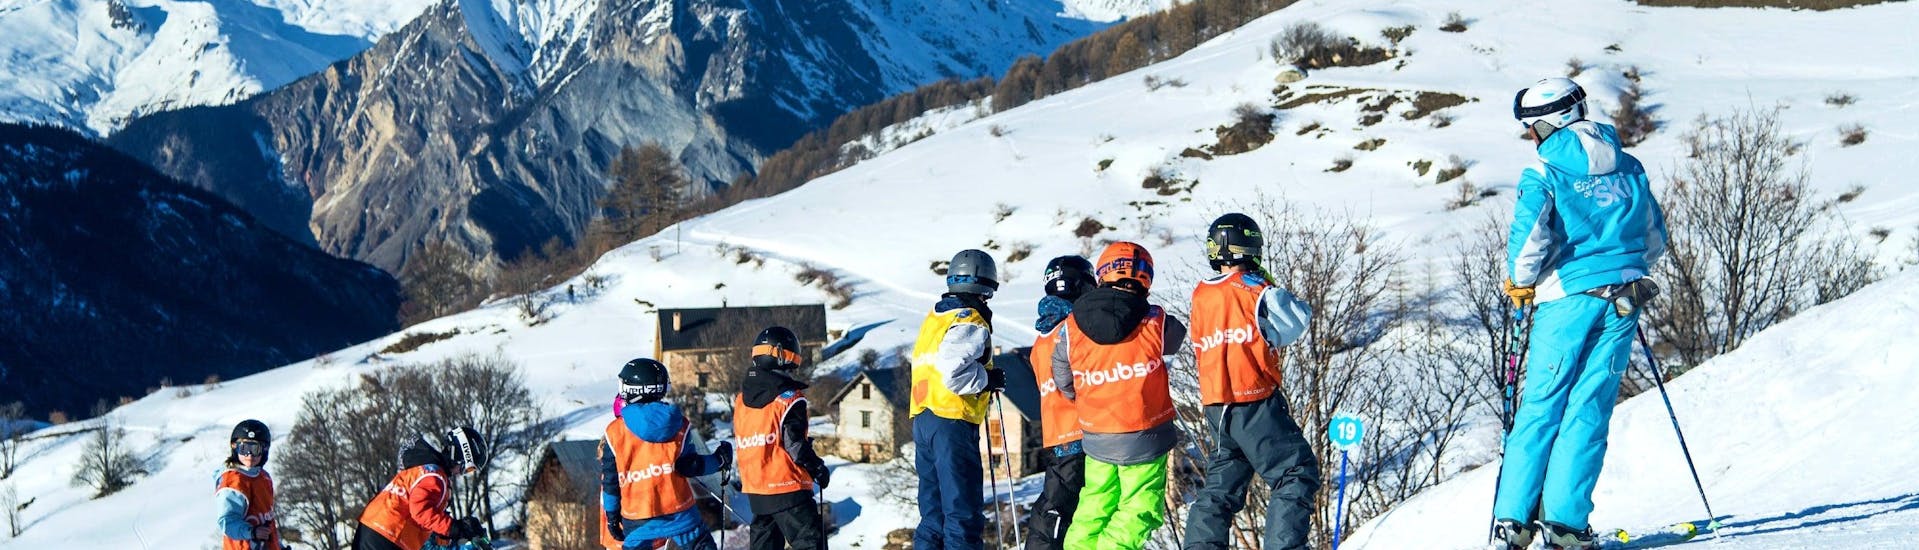 Lezioni di sci per bambini a partire da 6 anni con esperienza.